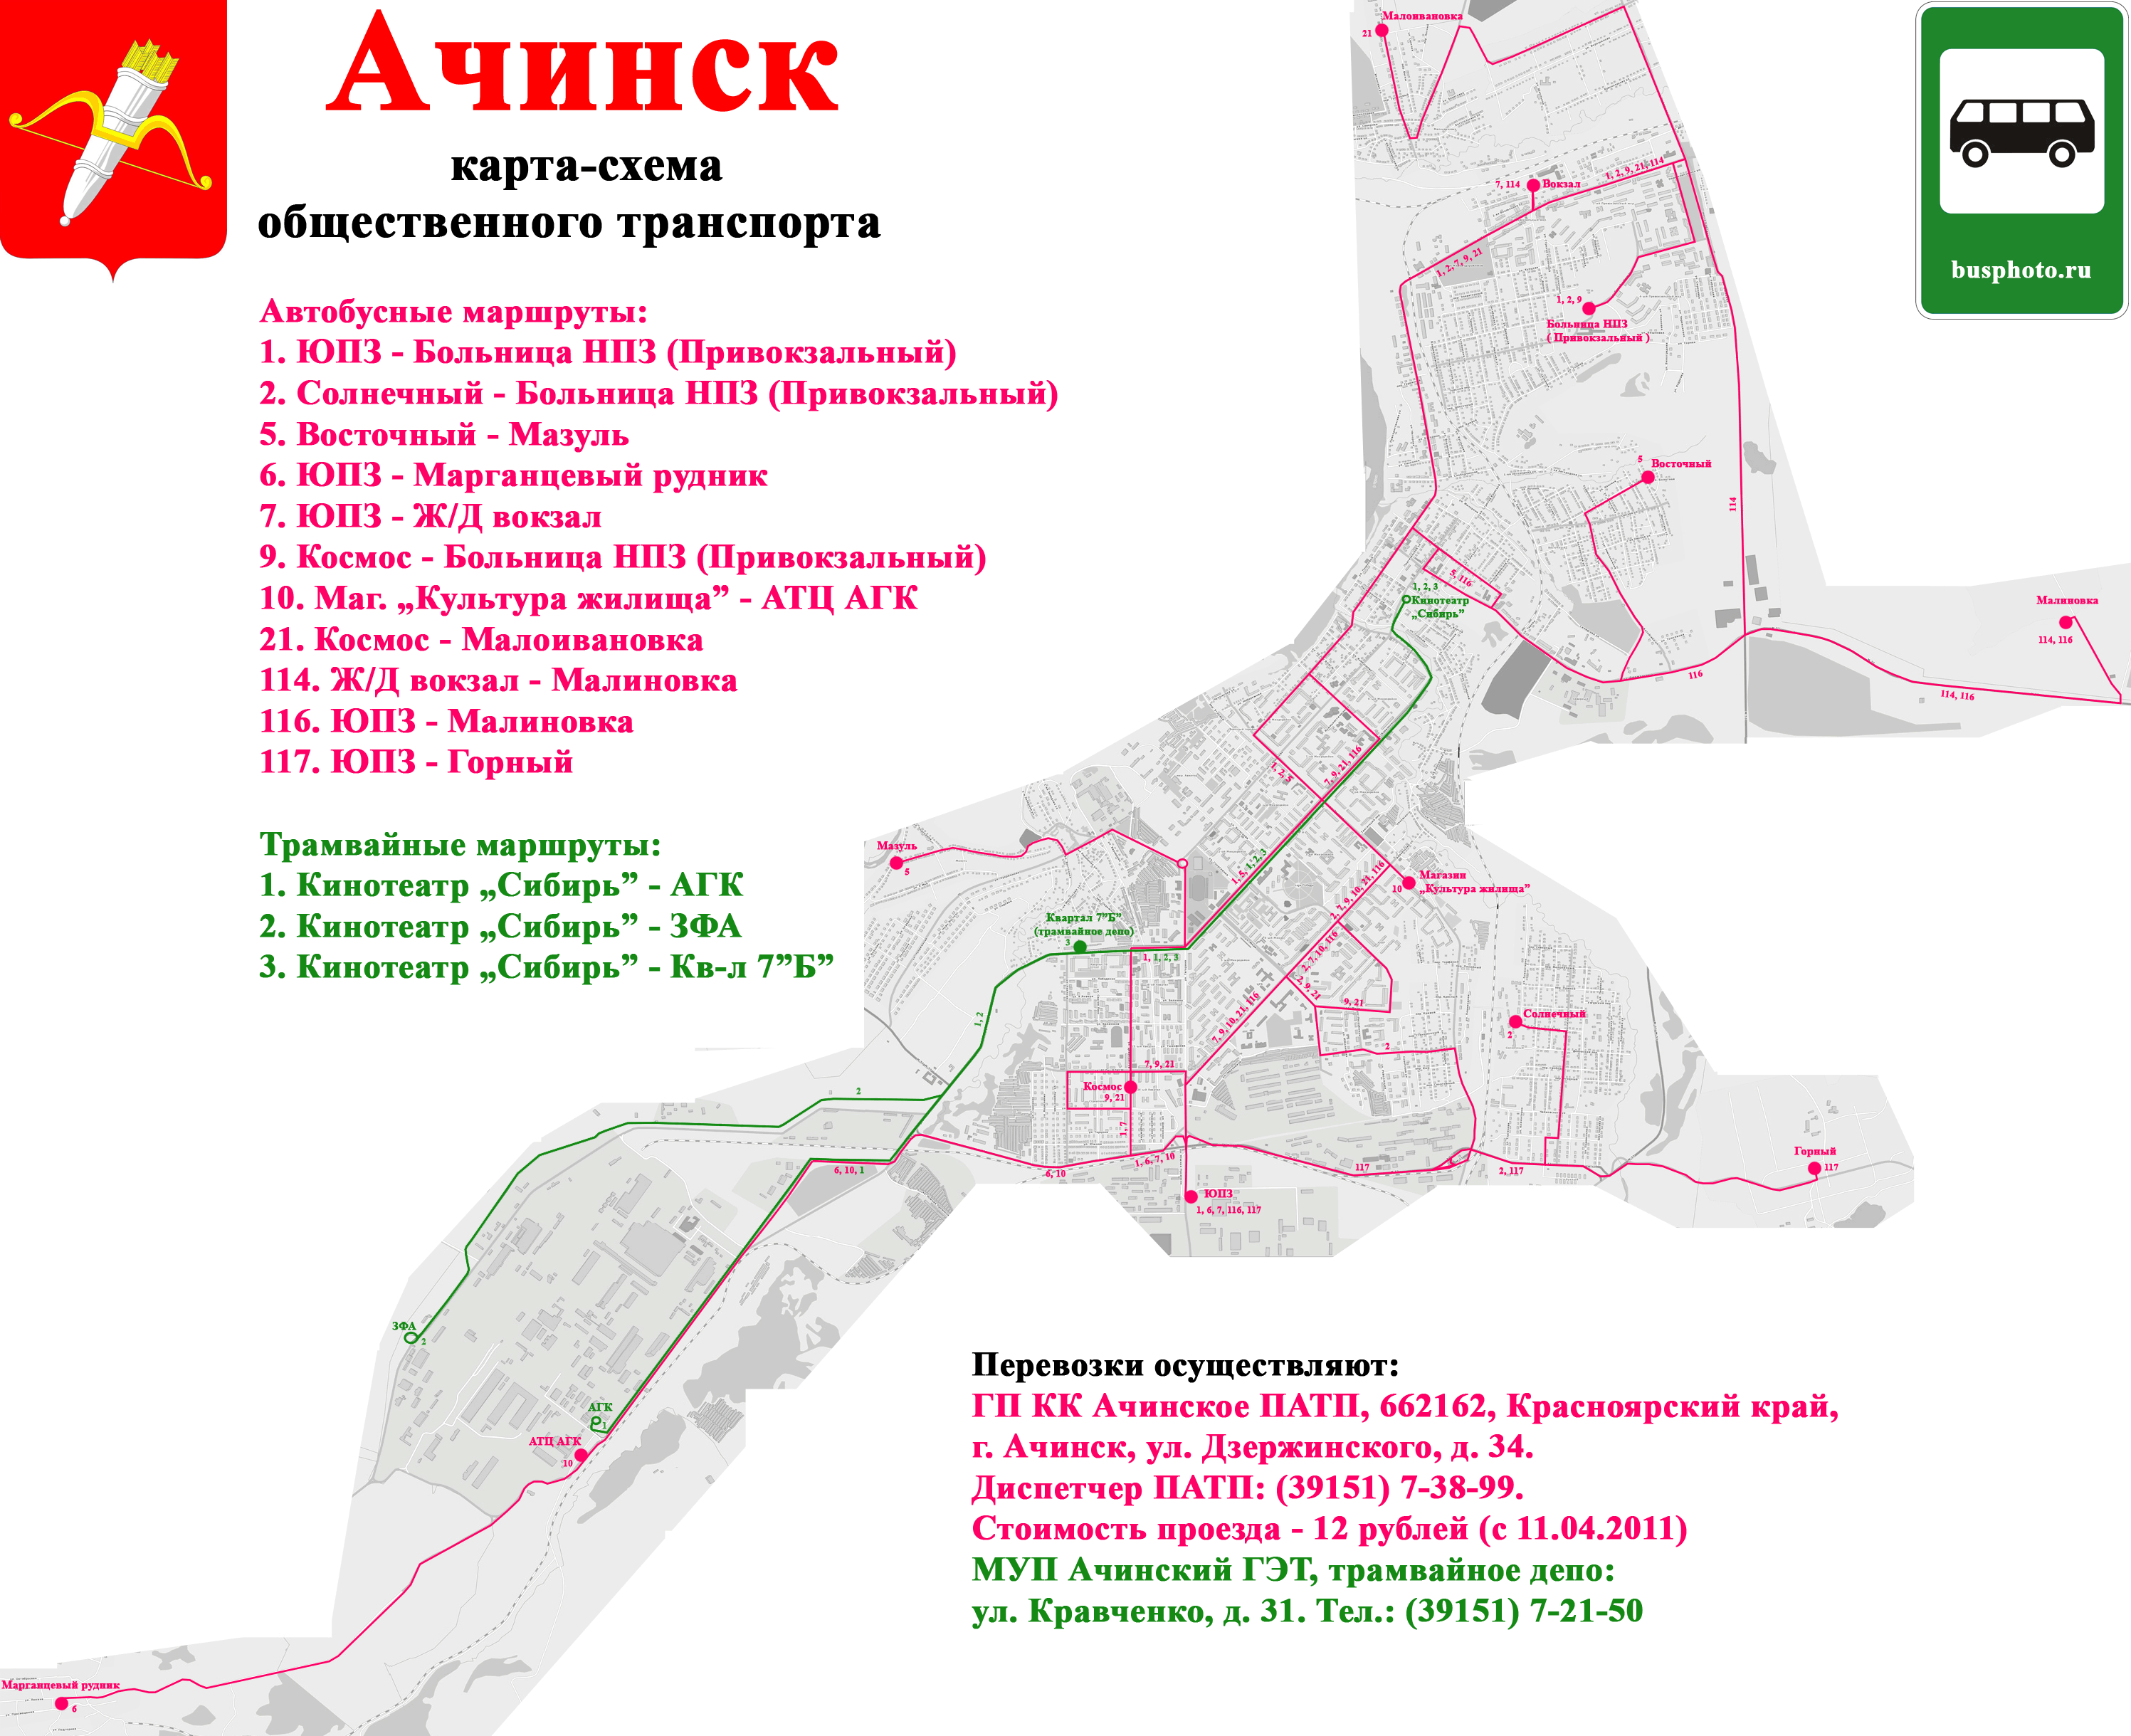 Achinsk — Maps; Maps routes